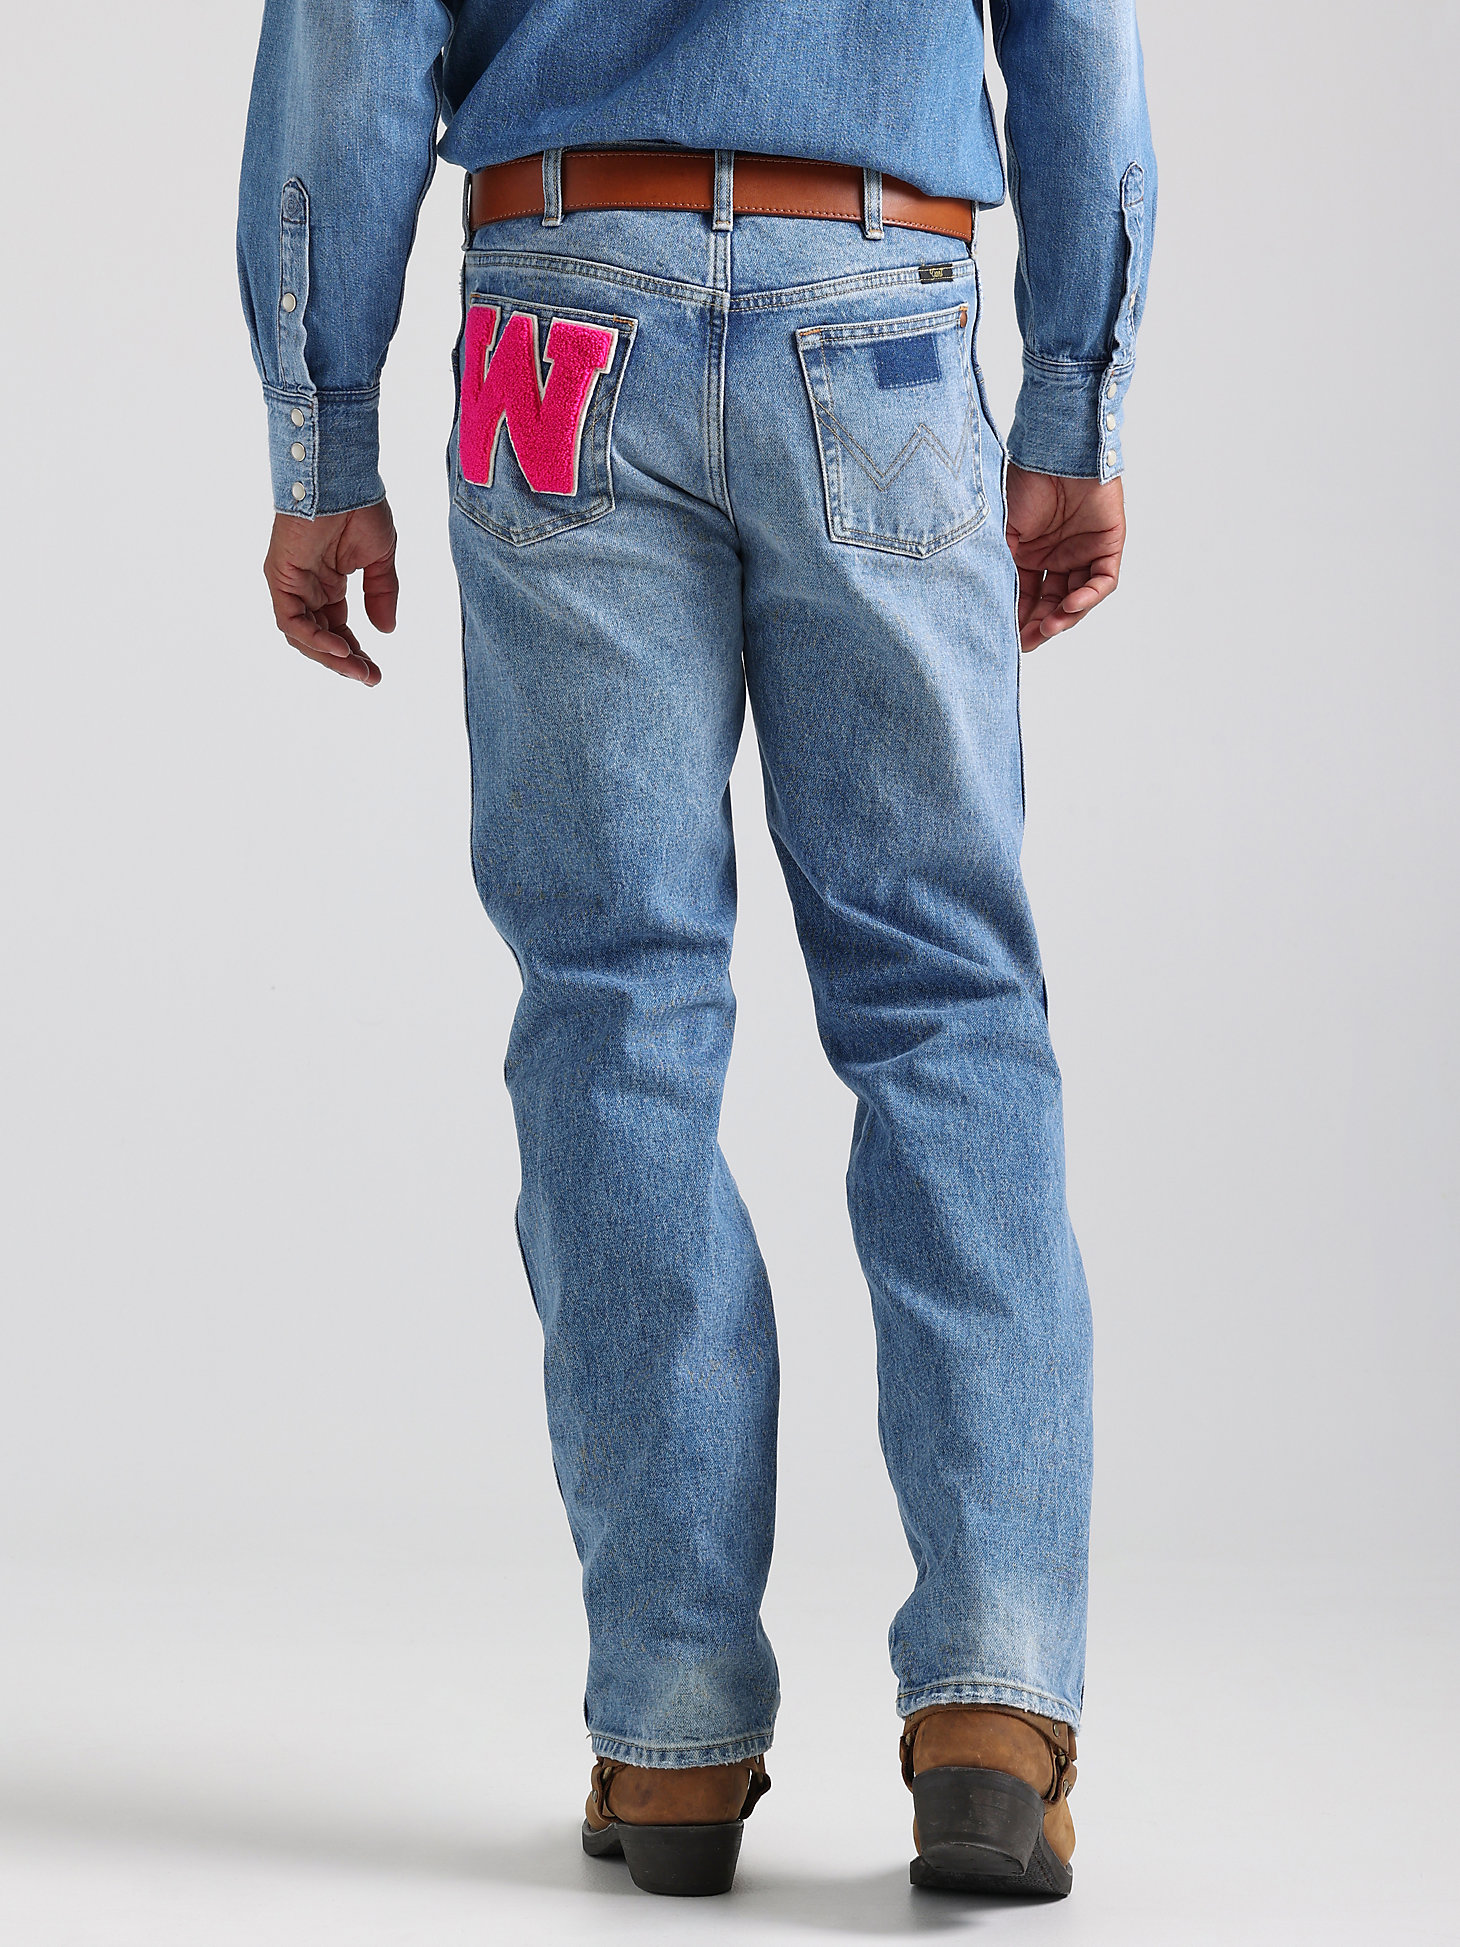 MWZ Jeans in Semi Light Blue Broken In alternative view 4